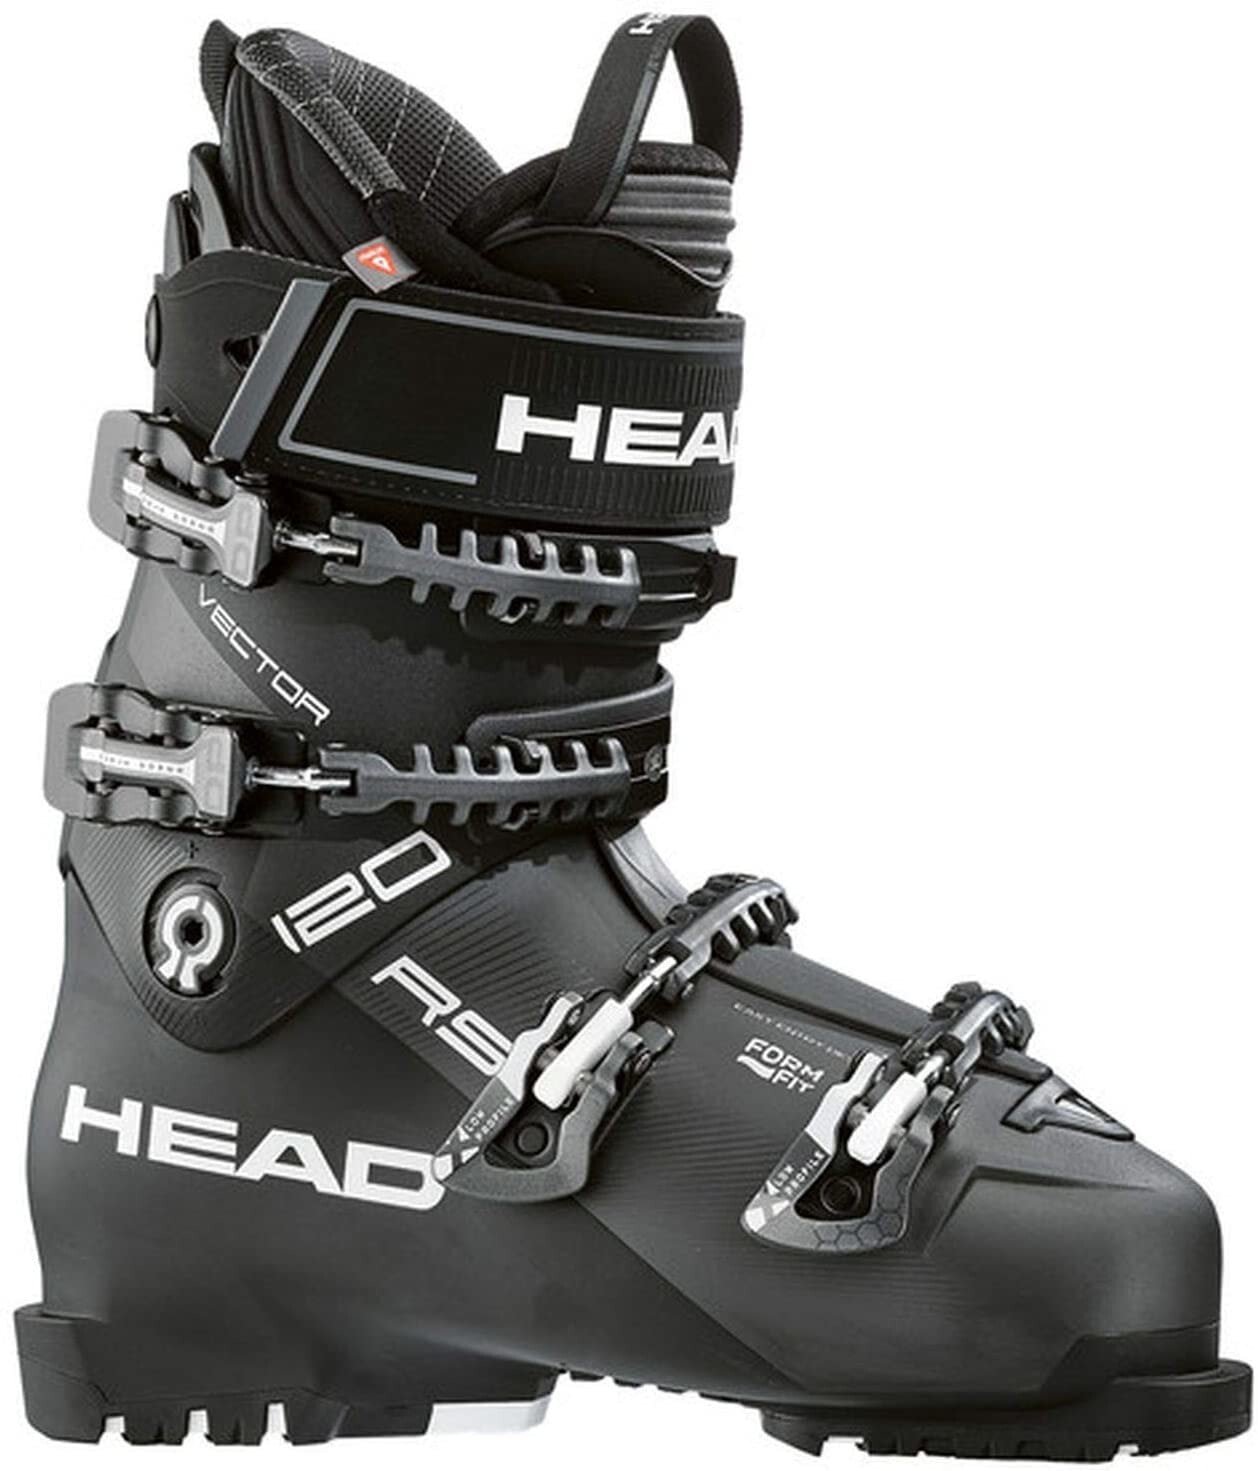 Ботинки для горных лыж HEAD Vector 120S RS Men's Ski Boots (2020)